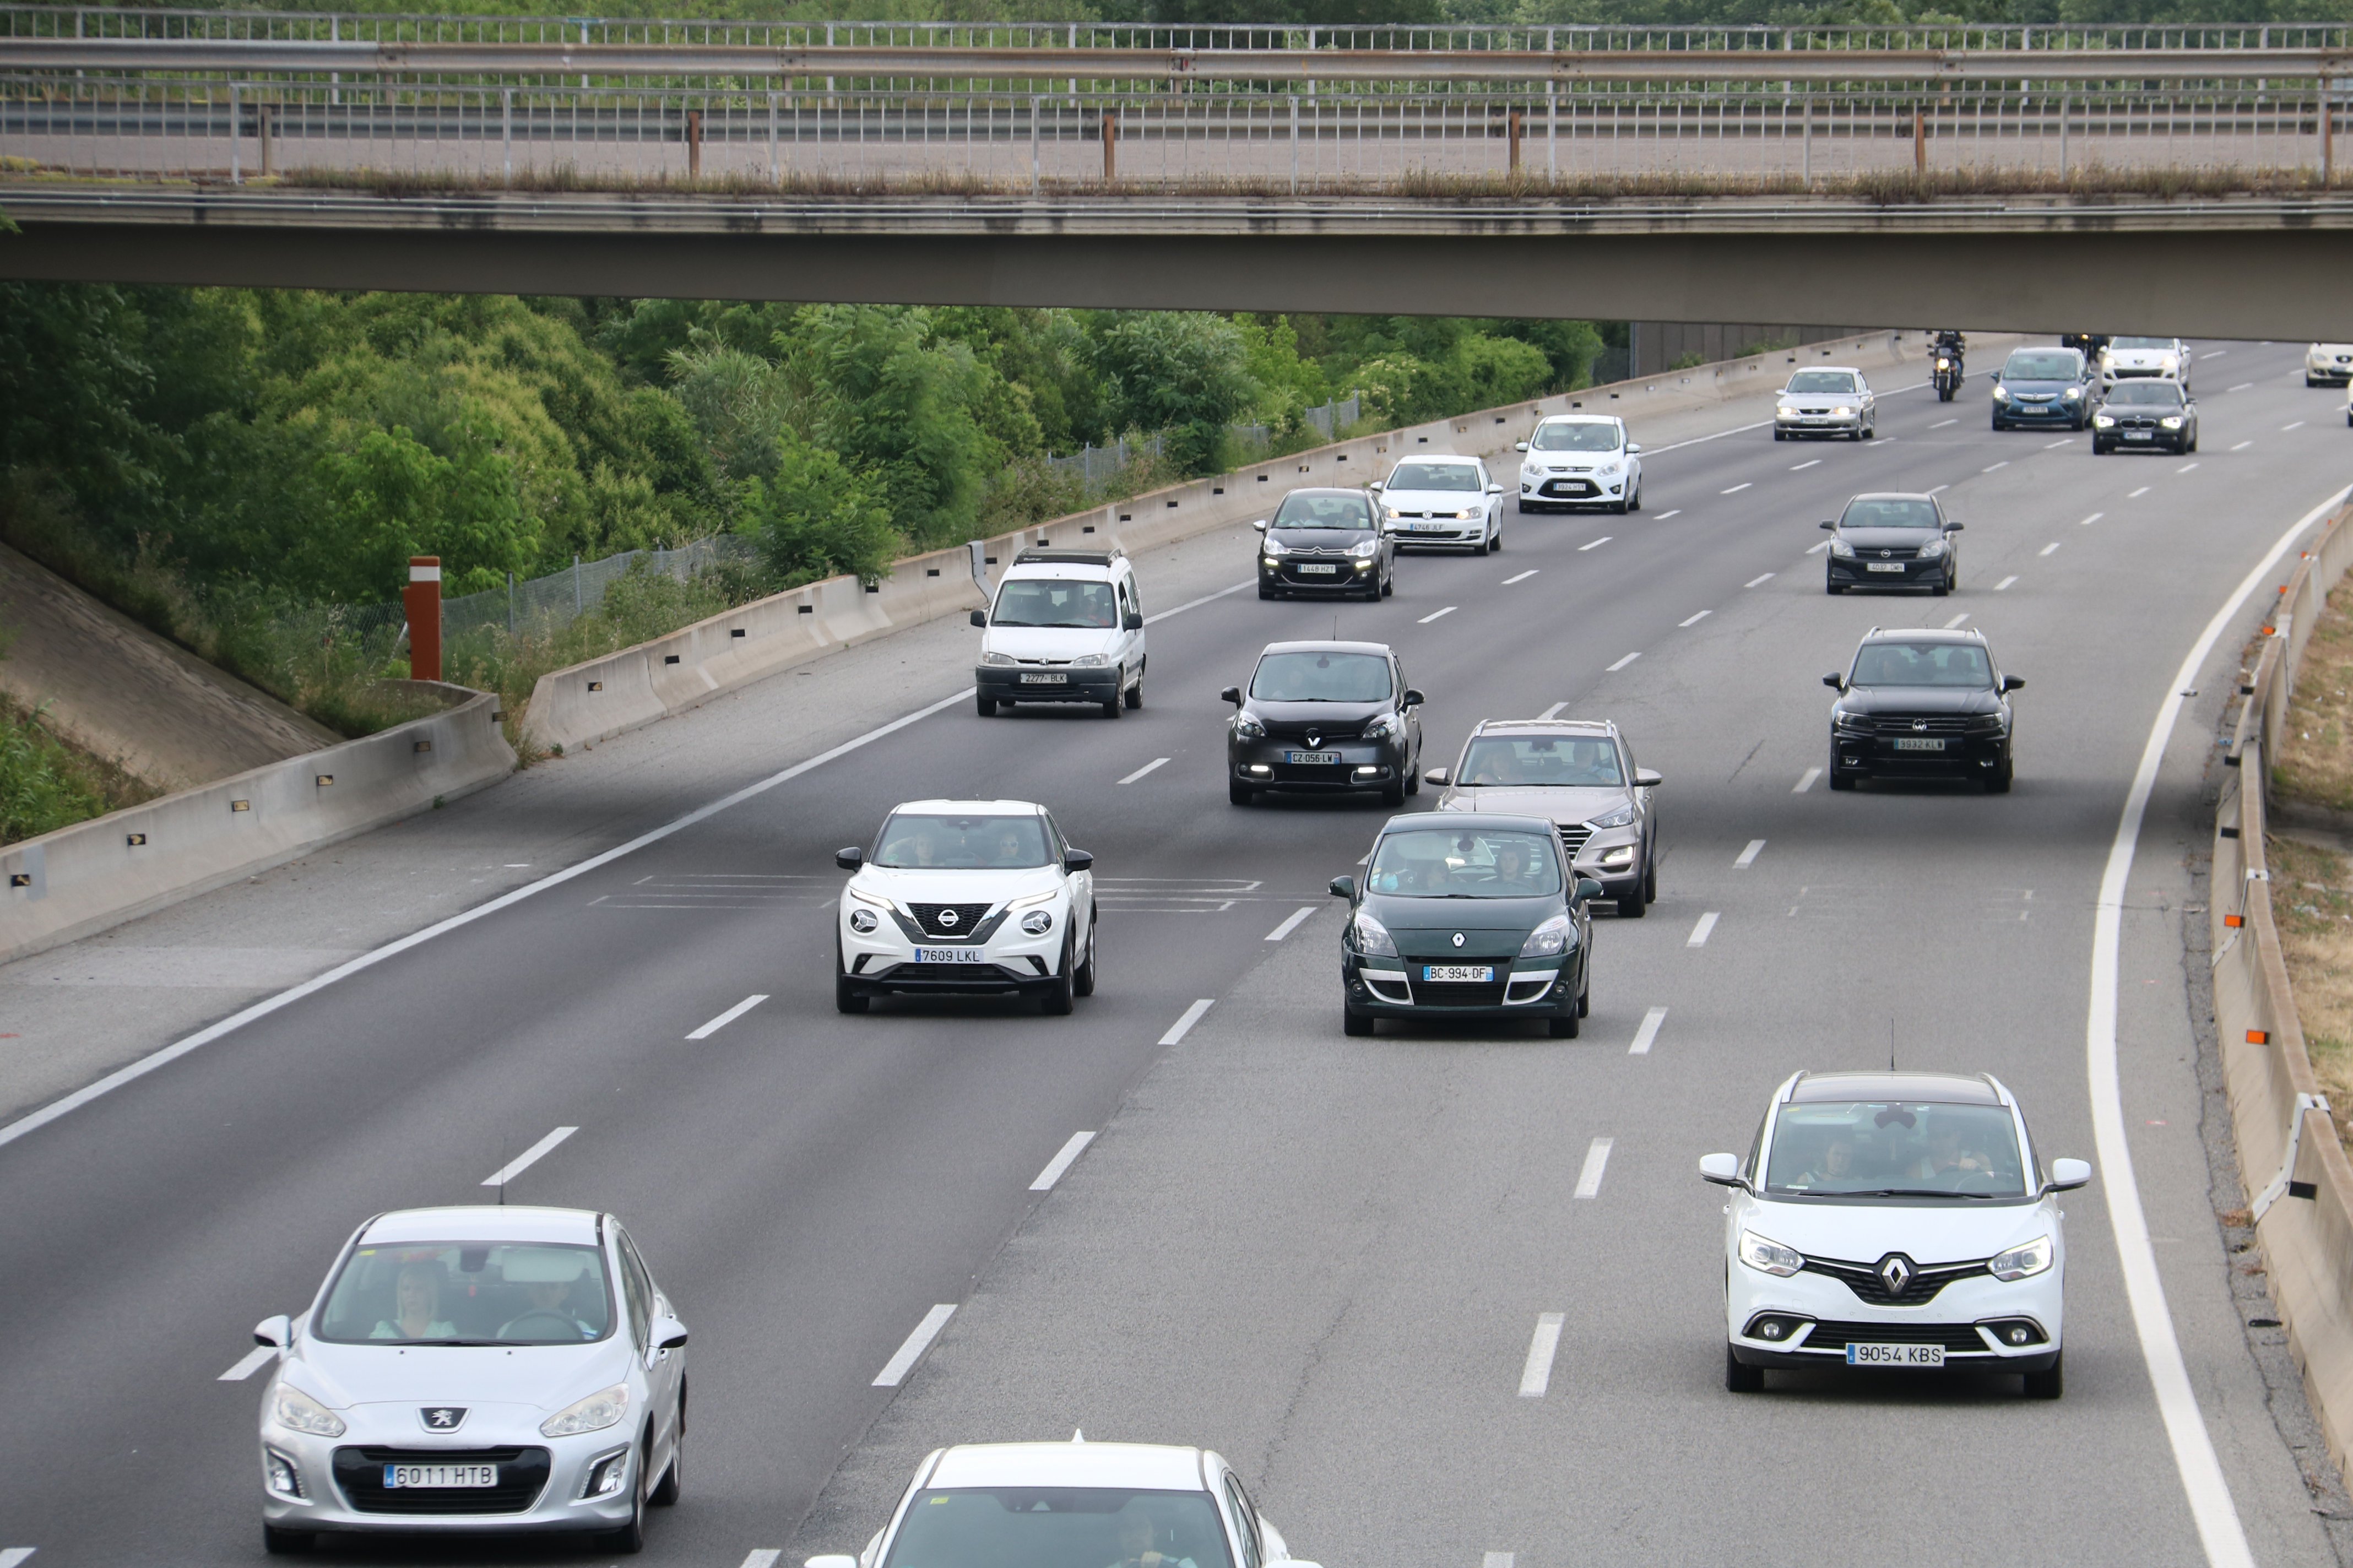 Trànsit prevé el retorno de 250.000 vehículos este domingo al área metropolitana